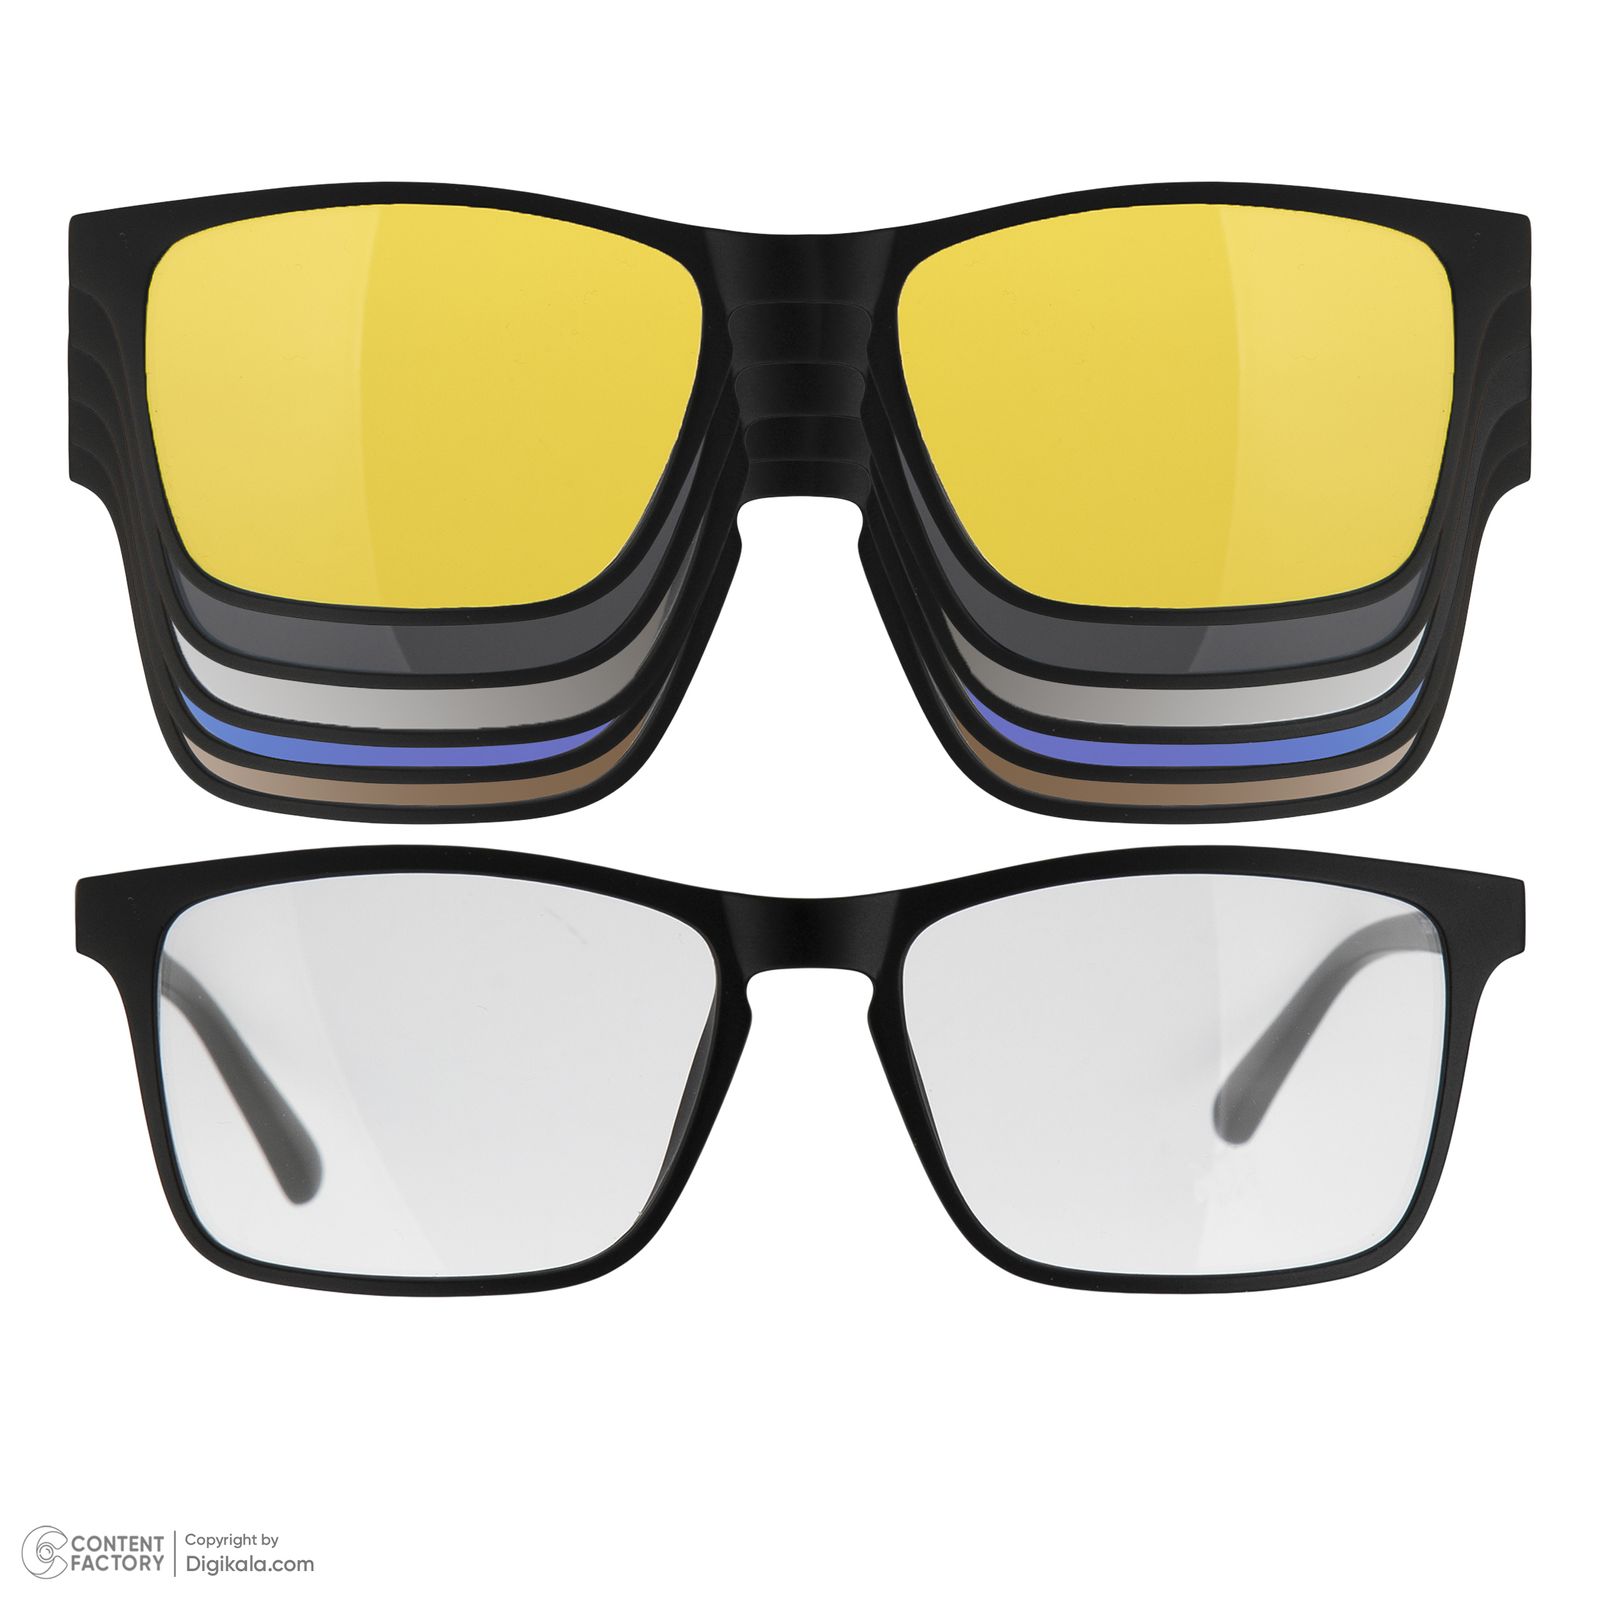 فریم عینک طبی دونیک مدل tr2268-c2 به همراه کاور آفتابی مجموعه 6 عددی -  - 2